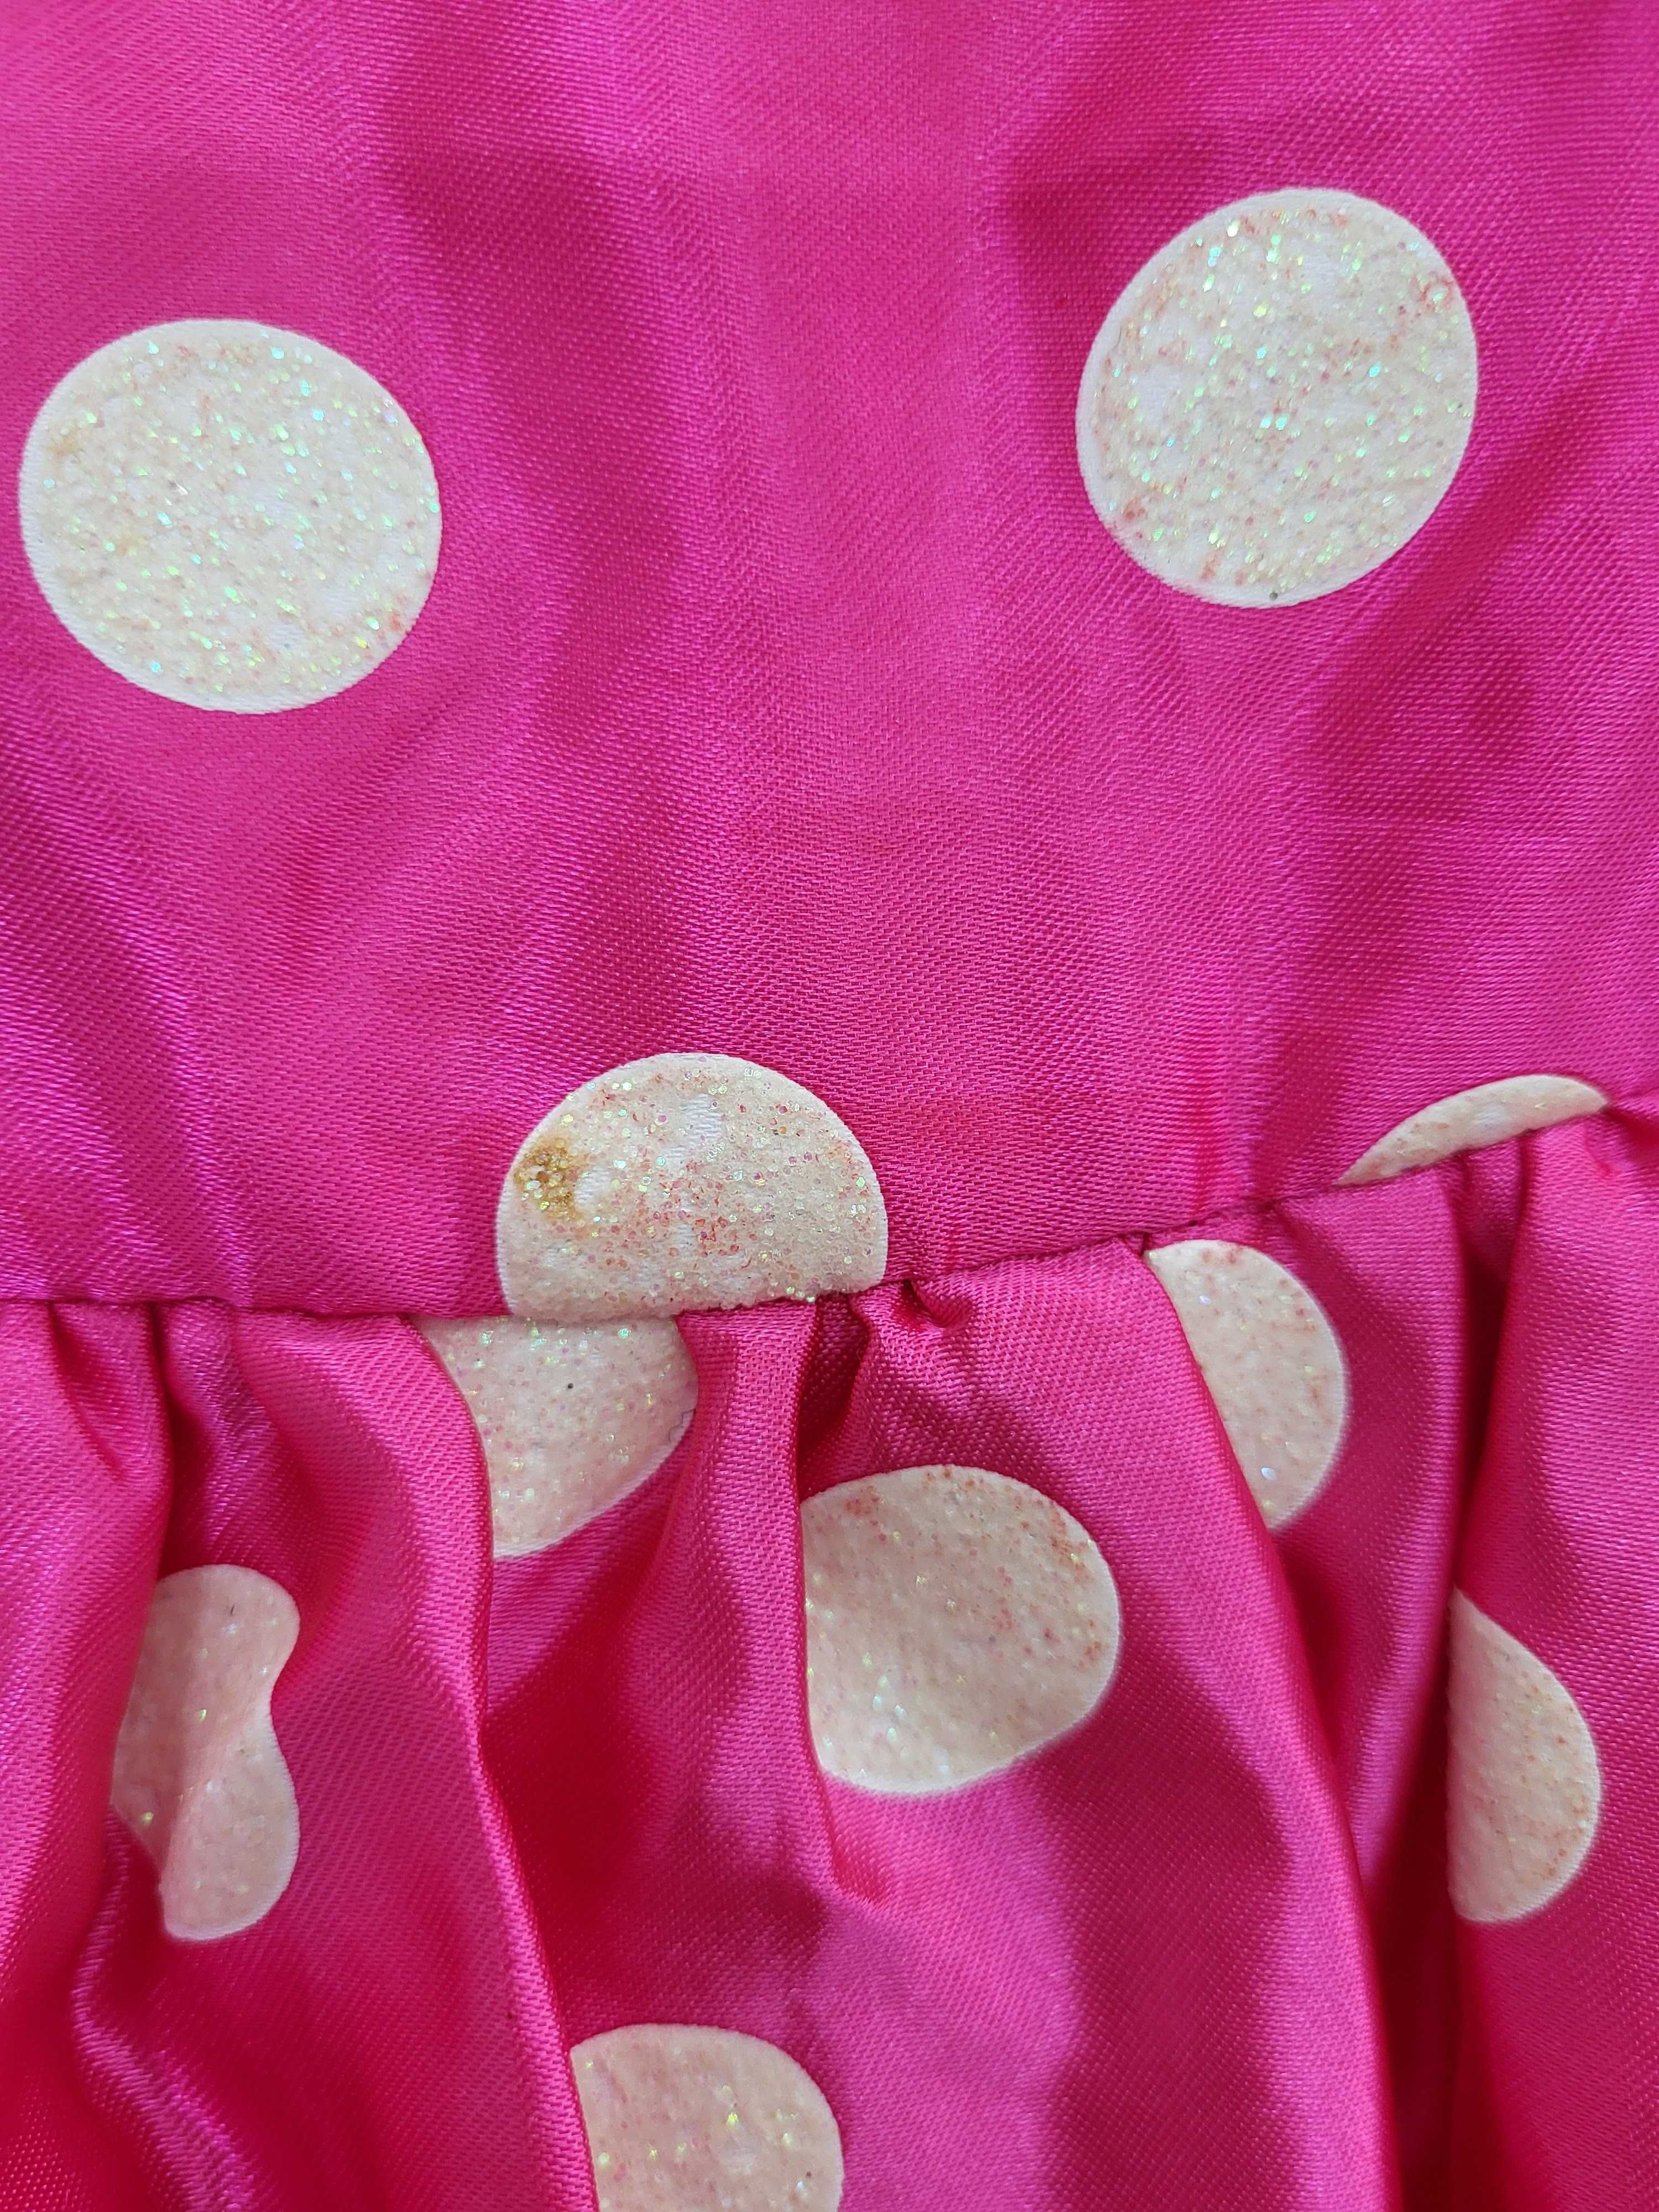 Różowa sukienka przebranie Myszka Minnie rozmiar 4 - 6 lat A2963